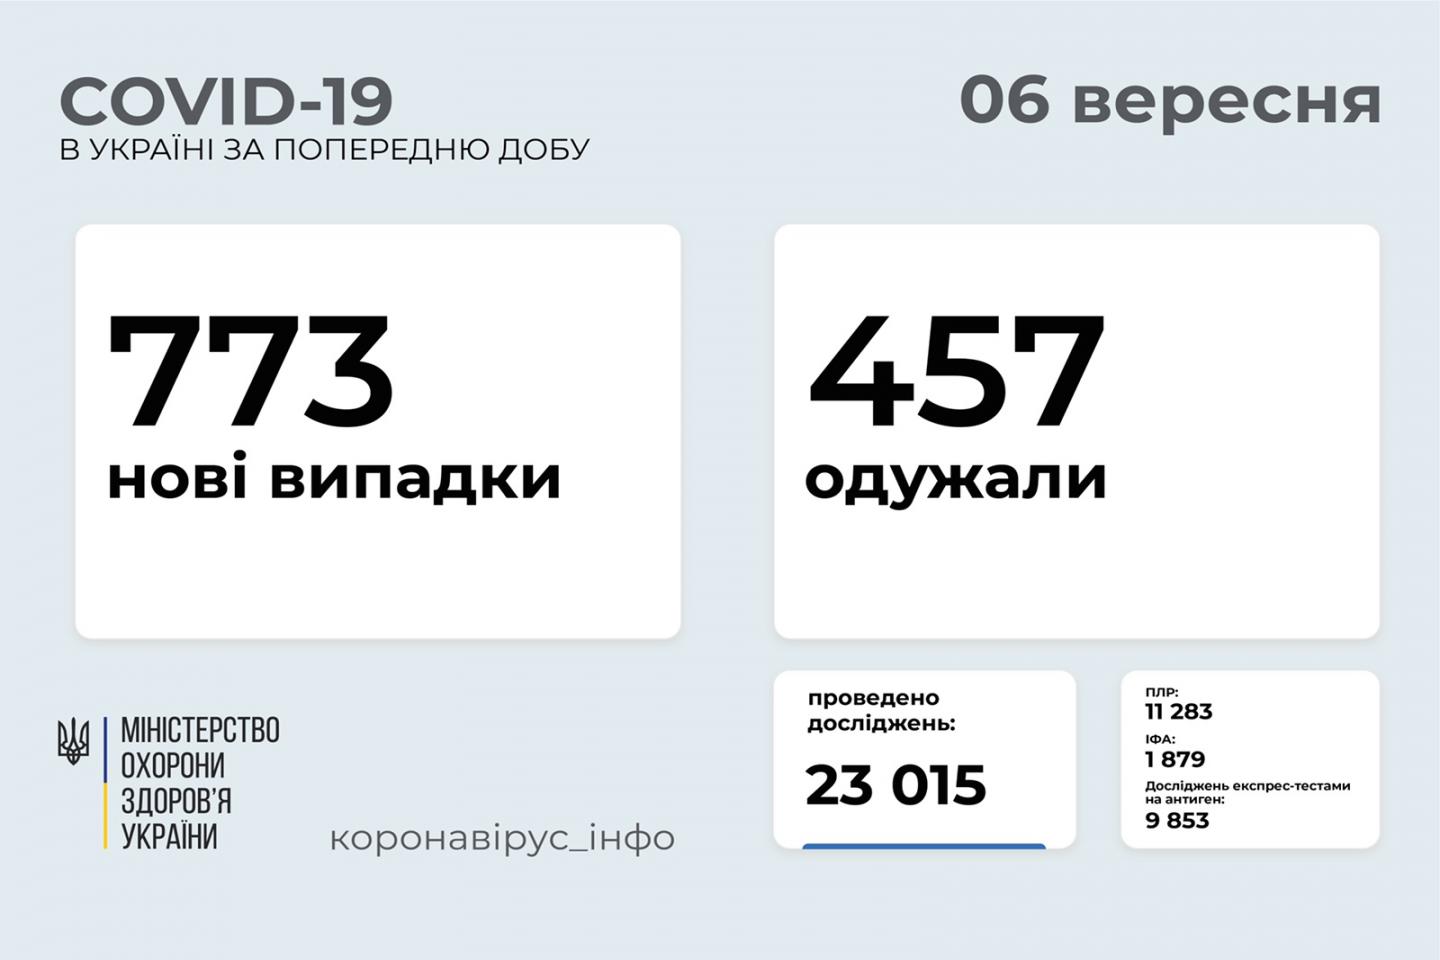 http://dunrada.gov.ua/uploadfile/archive_news/2021/09/06/2021-09-06_6389/images/images-47379.jpg